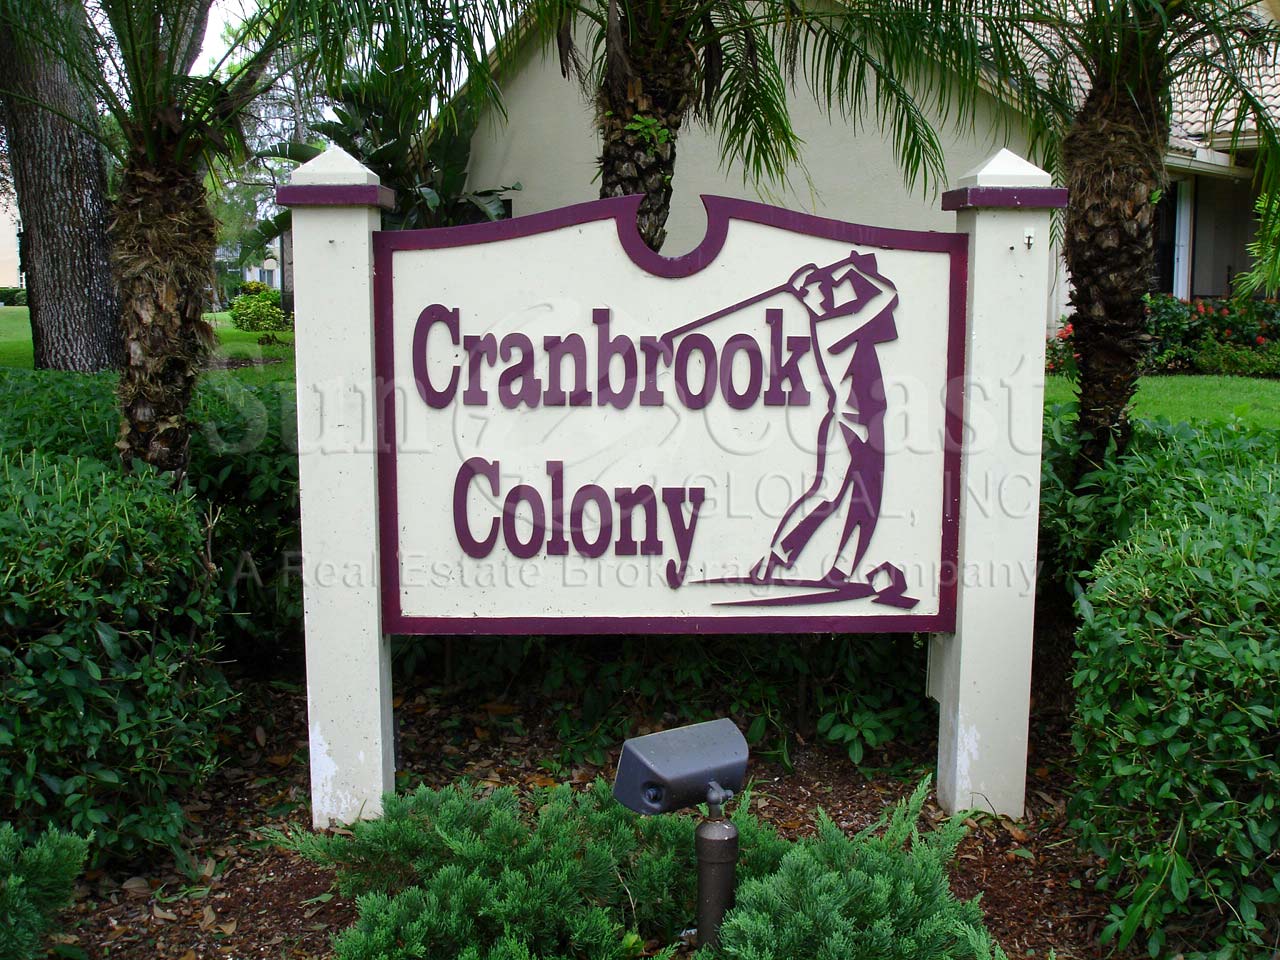 Cranbrook Colony signage